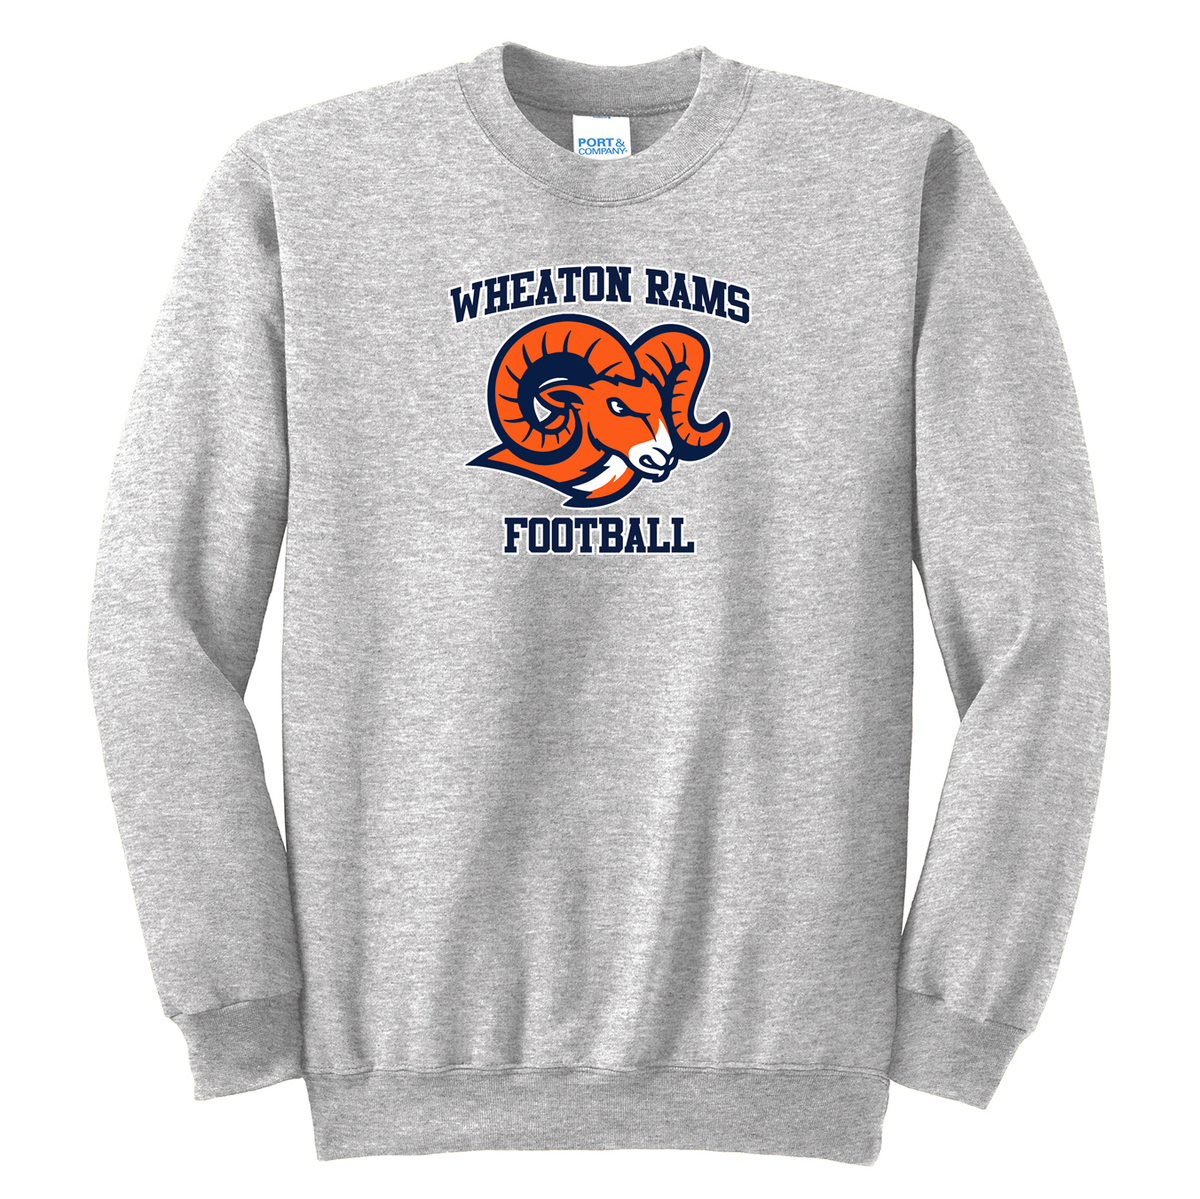 Wheaton Rams Football Crew Neck Sweater